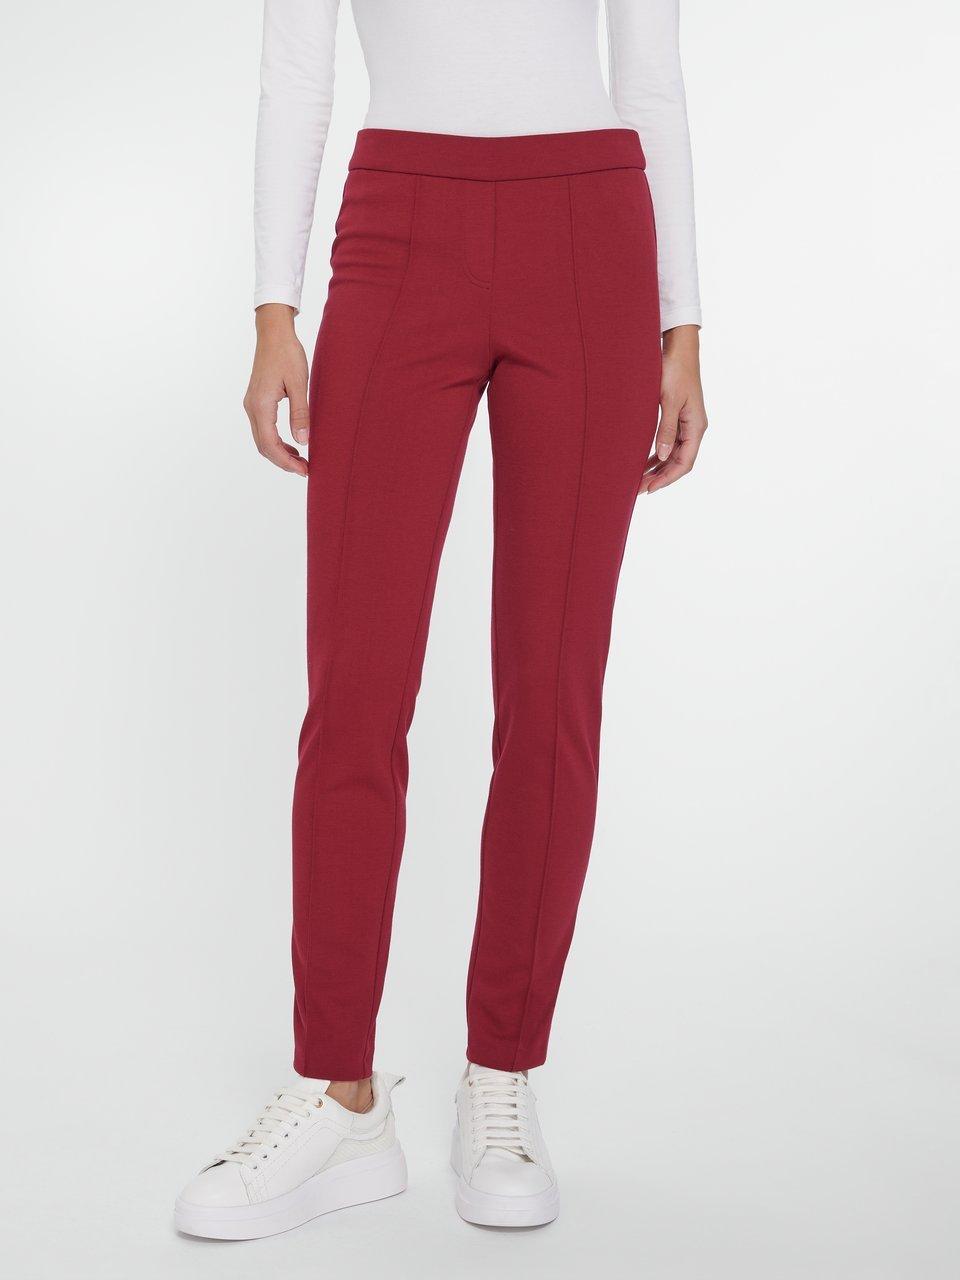 Damen rote Hosen, Neue Kollektion Online